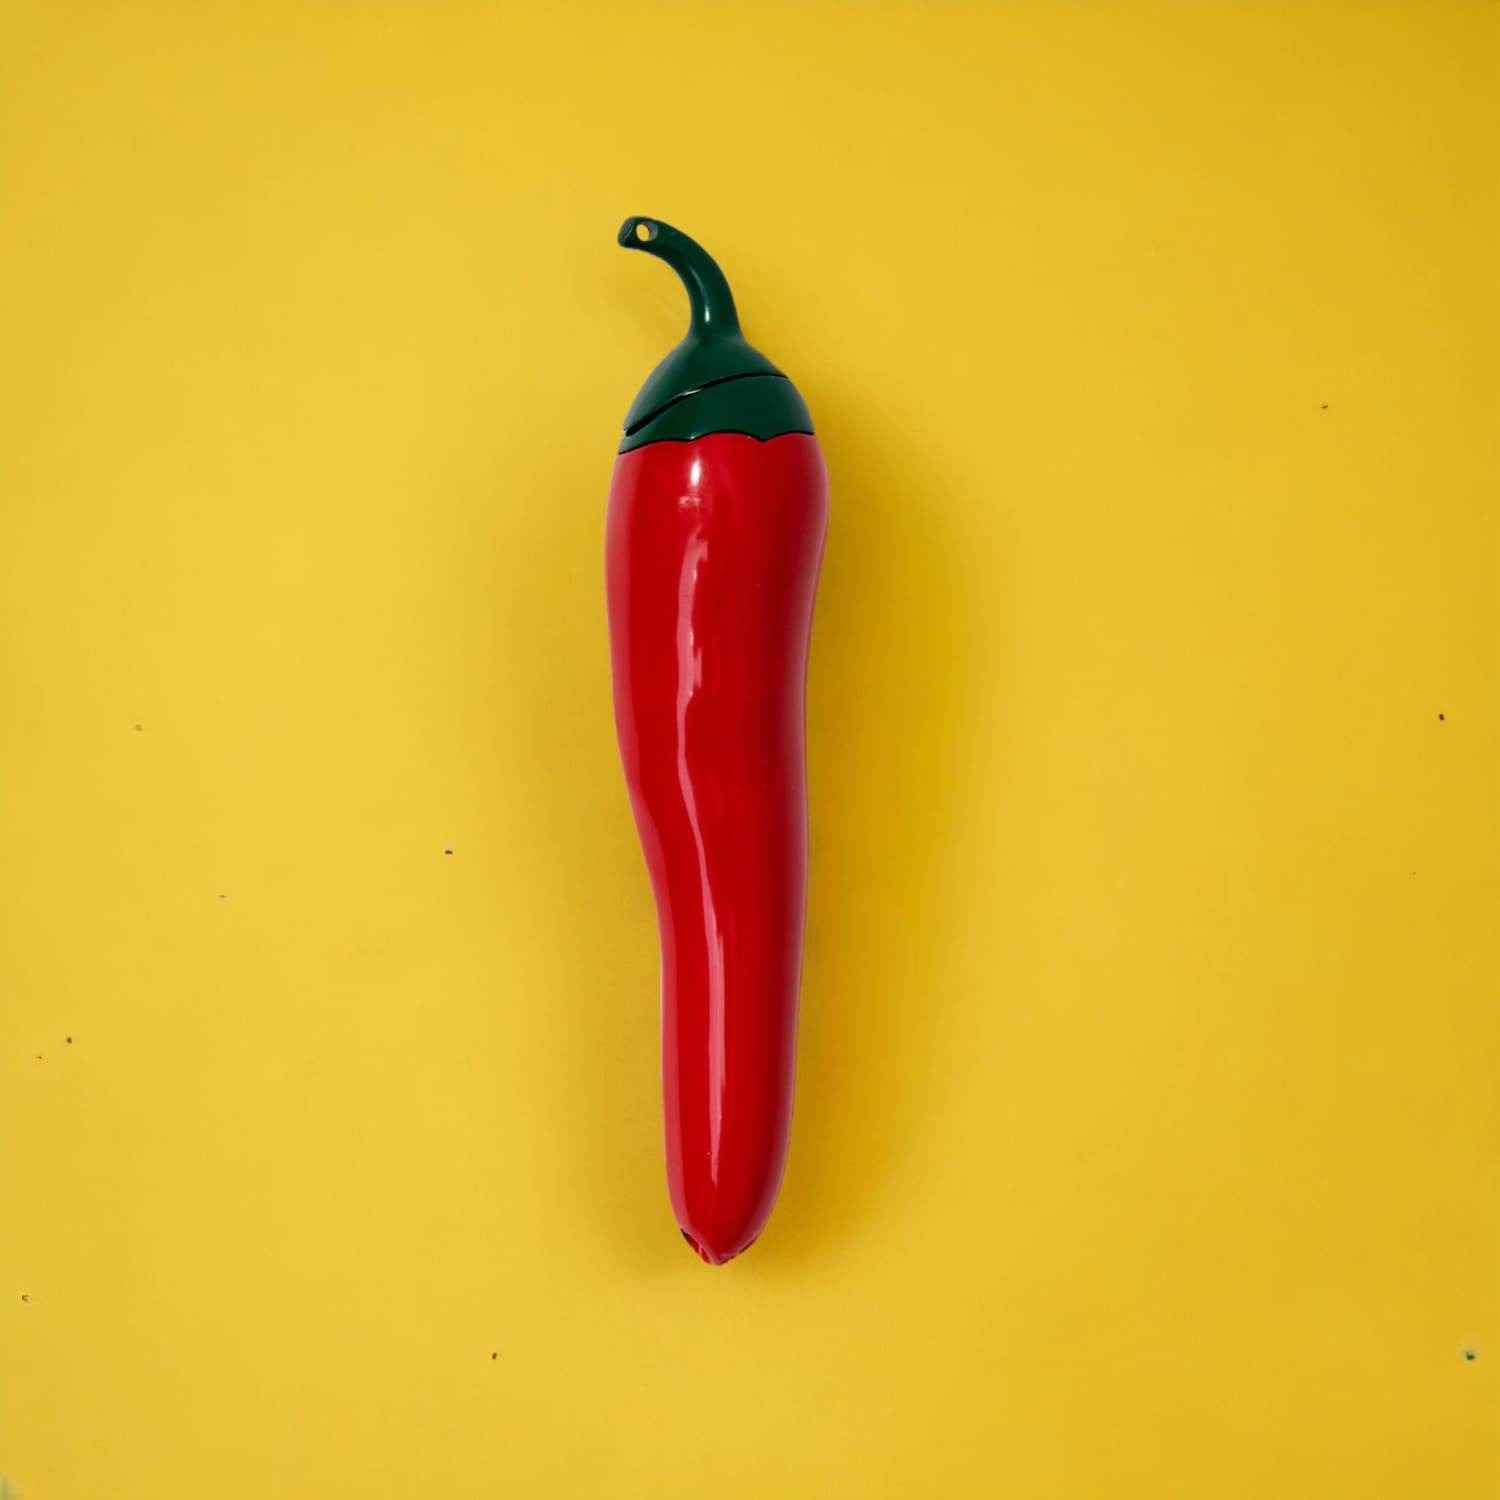 Chili Pepper Lighter 0523 - Aesthetic Lighter - Novelty -